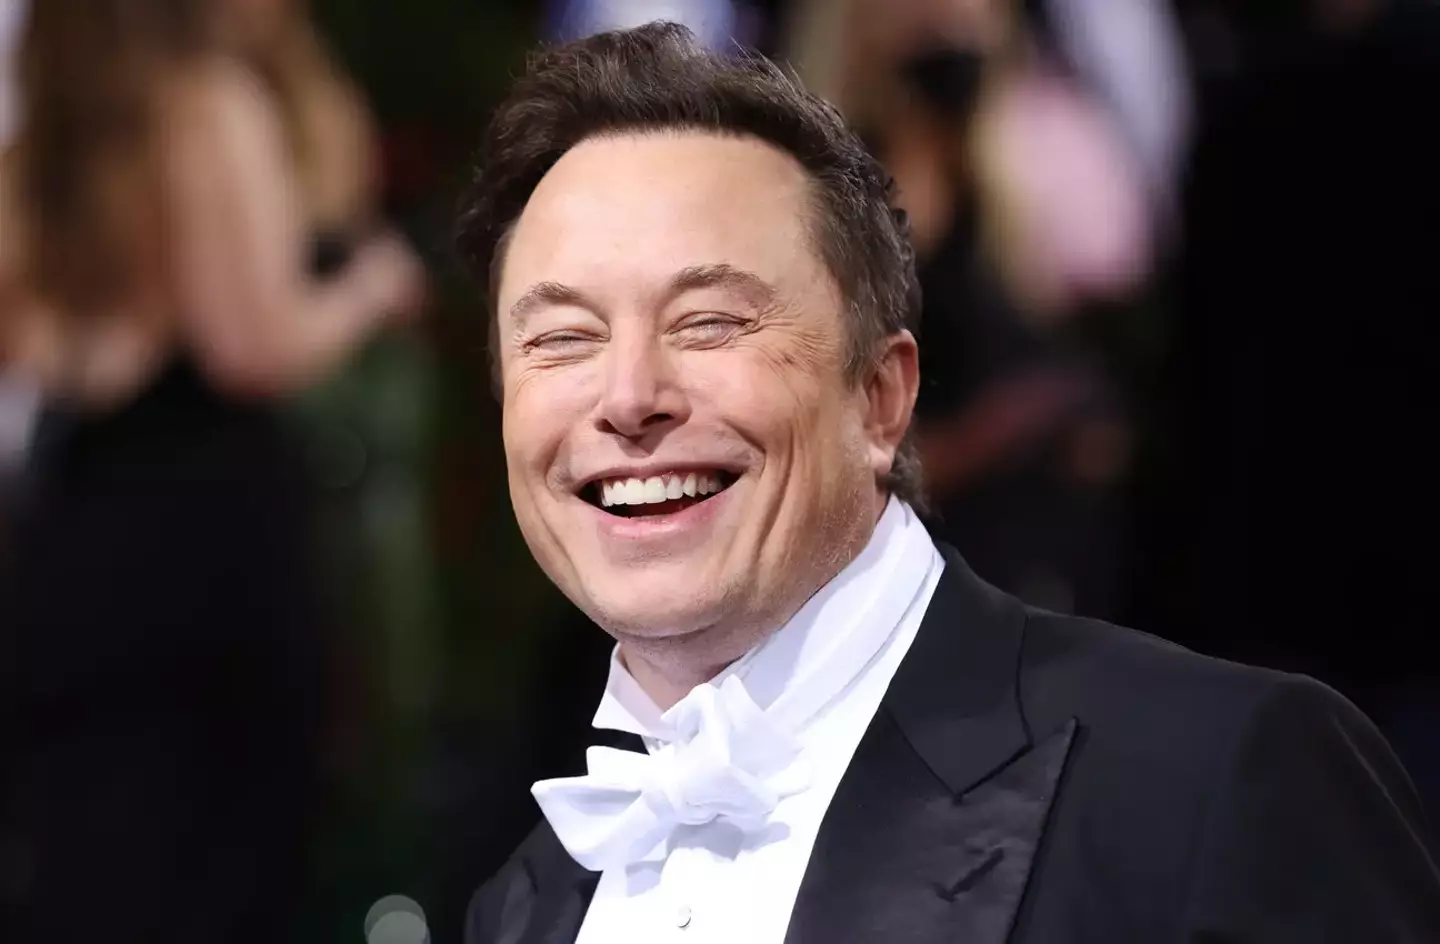 Elon Musk is no longer the world's richest man.